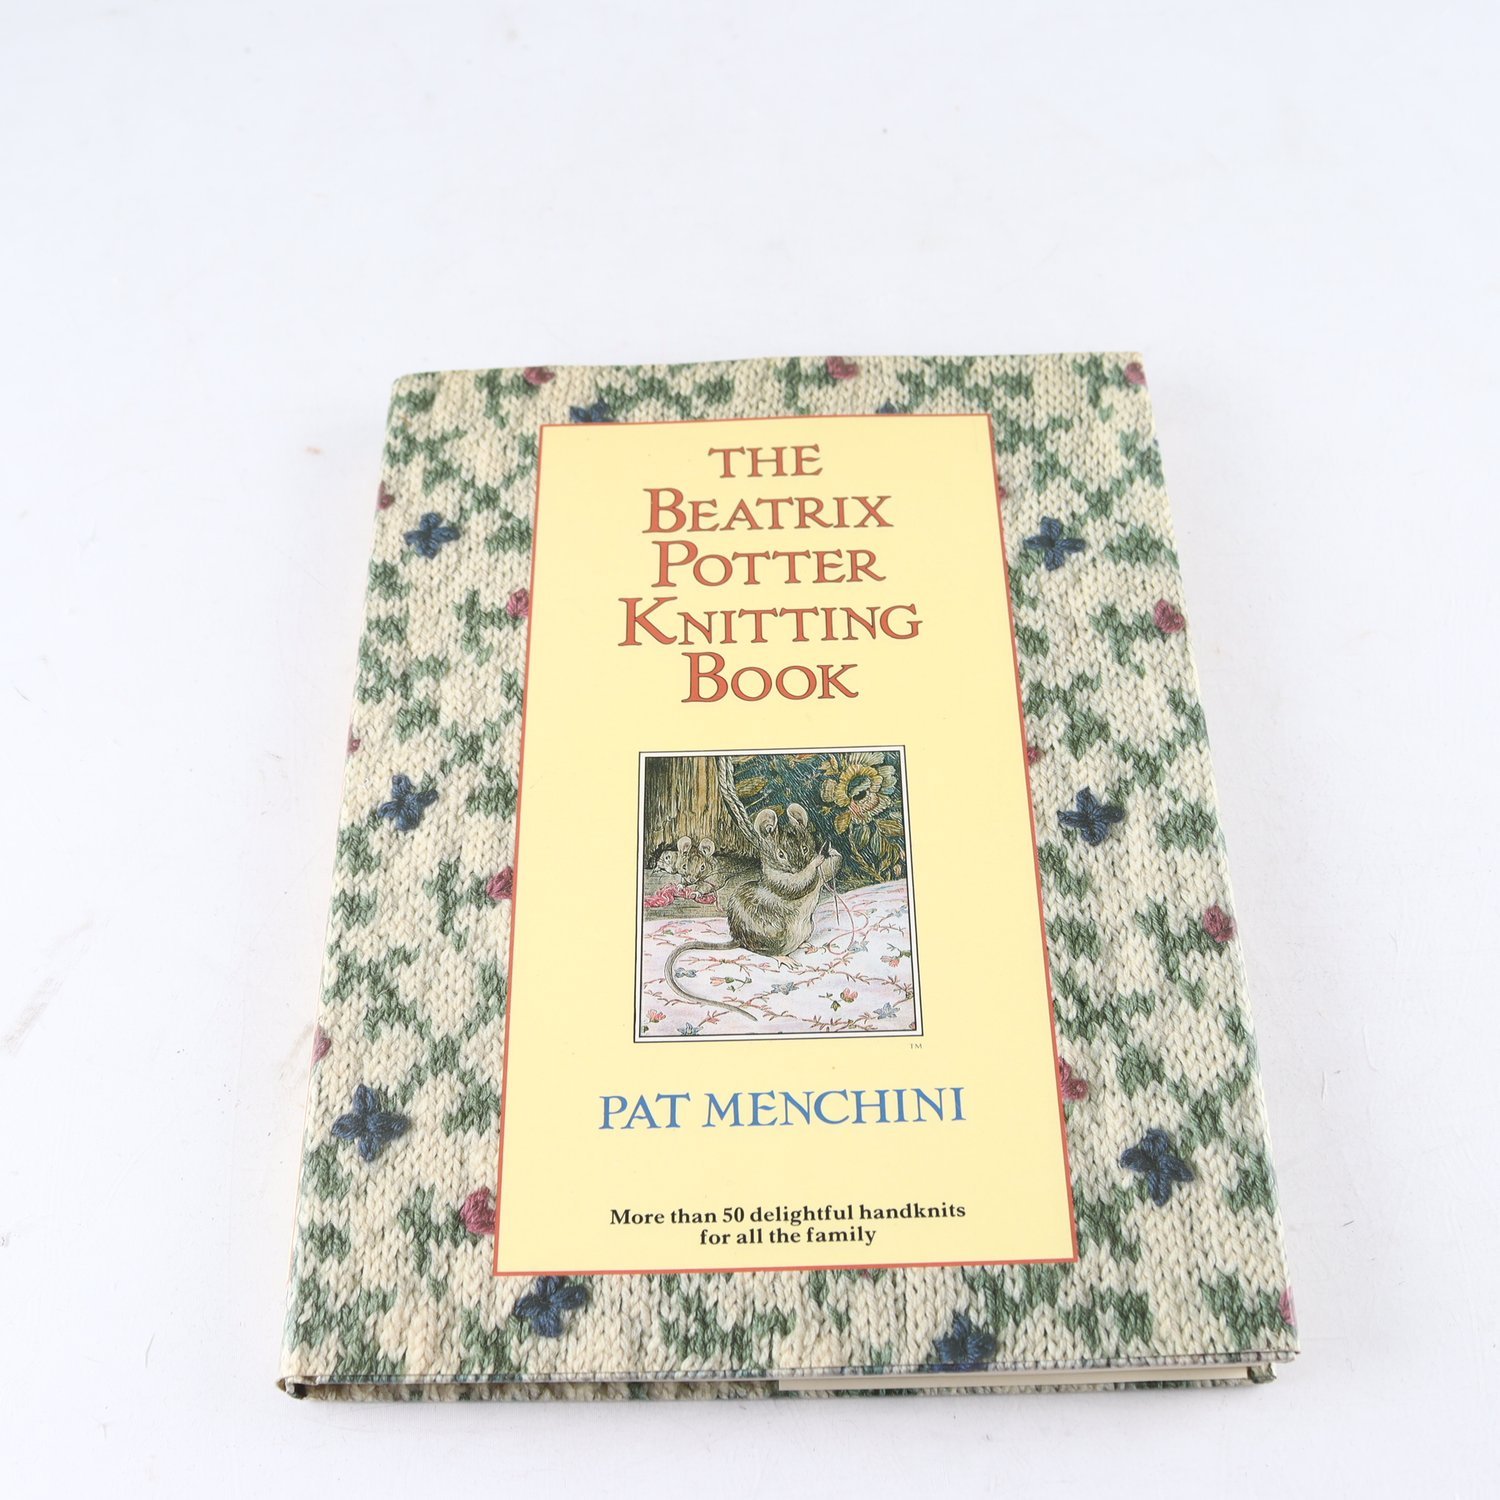 The Beatrix Potter Knitting Book, Pat Menchini